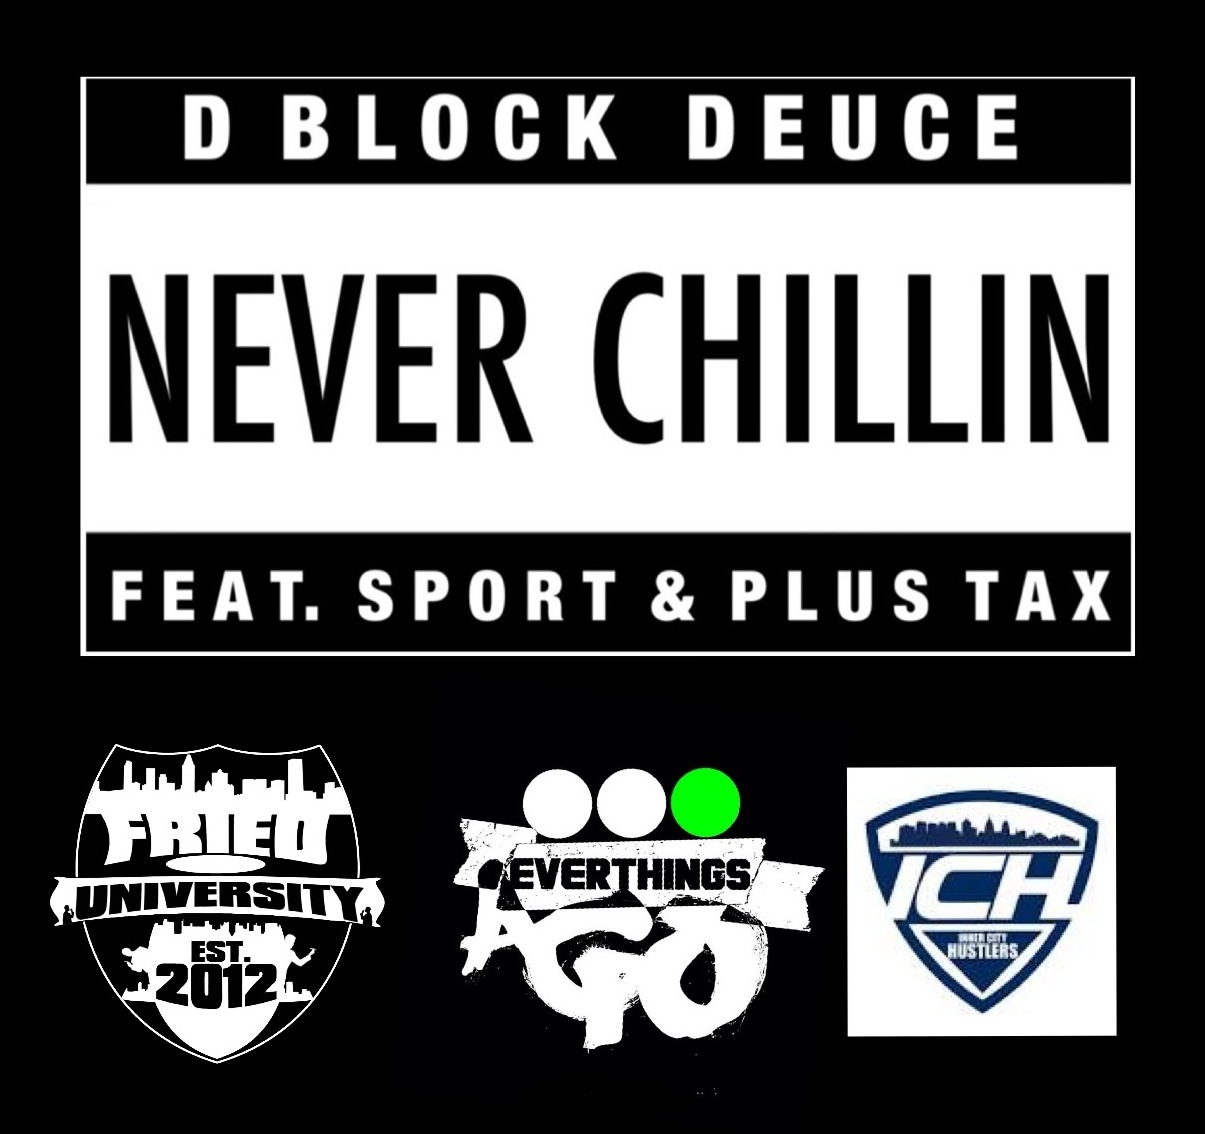 deuce-never-chillin-ft-plus-tax-sport-HHS1987-2013 Deuce - Never Chillin Ft. Plus Tax & Sport  